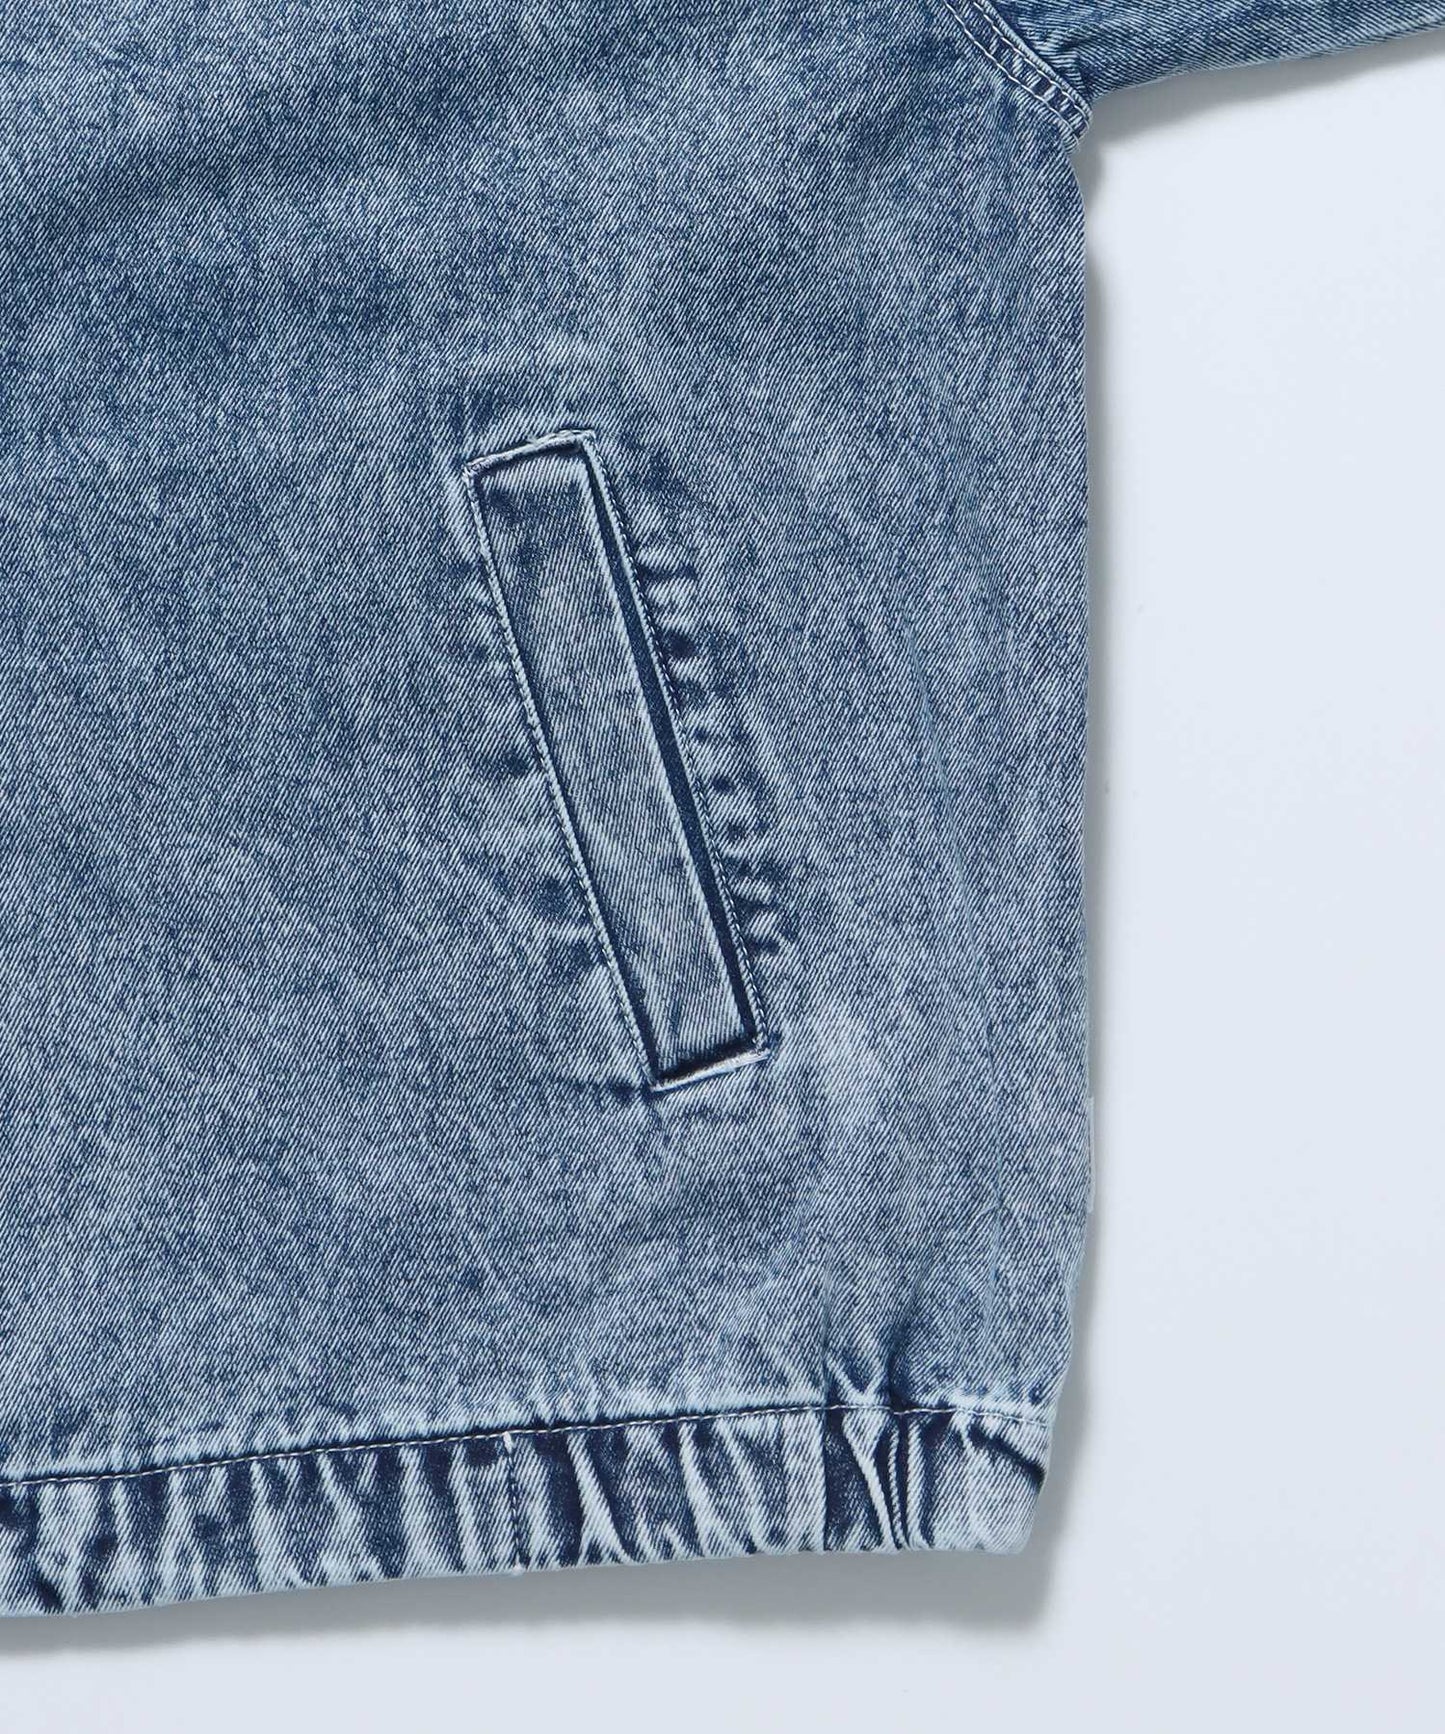 オーバーハイネックスタンドデニムワークジャケット / 襟コーデュロイ ケミカル加工 刺繍 ブランドロゴ サックスブルー